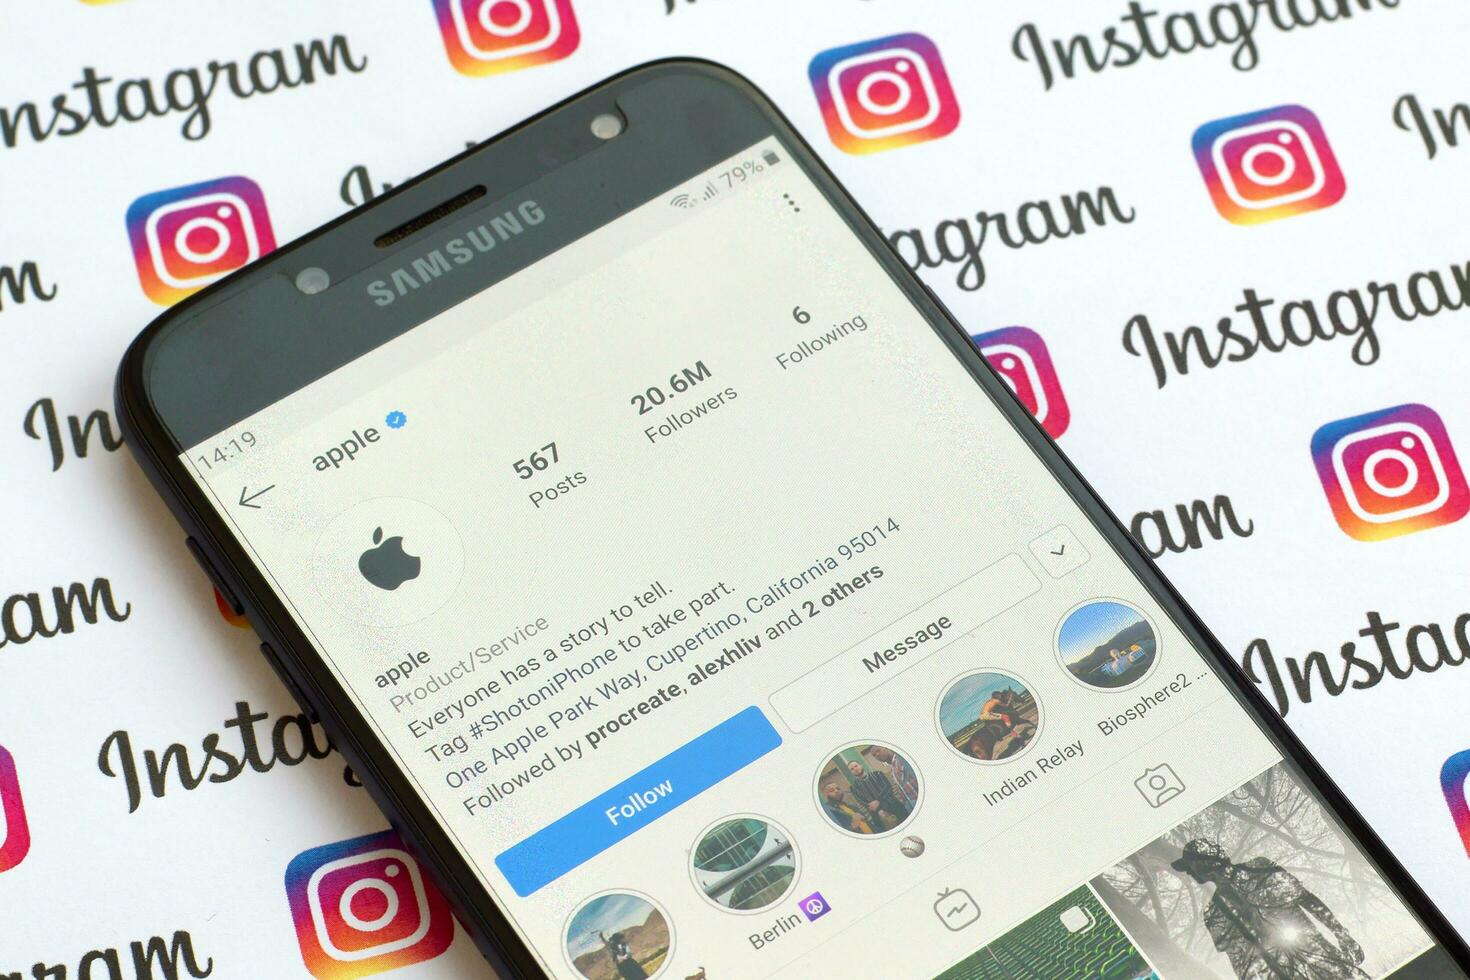 äpple officiell Instagram konto på smartphone skärm på papper Instagram baner. foto